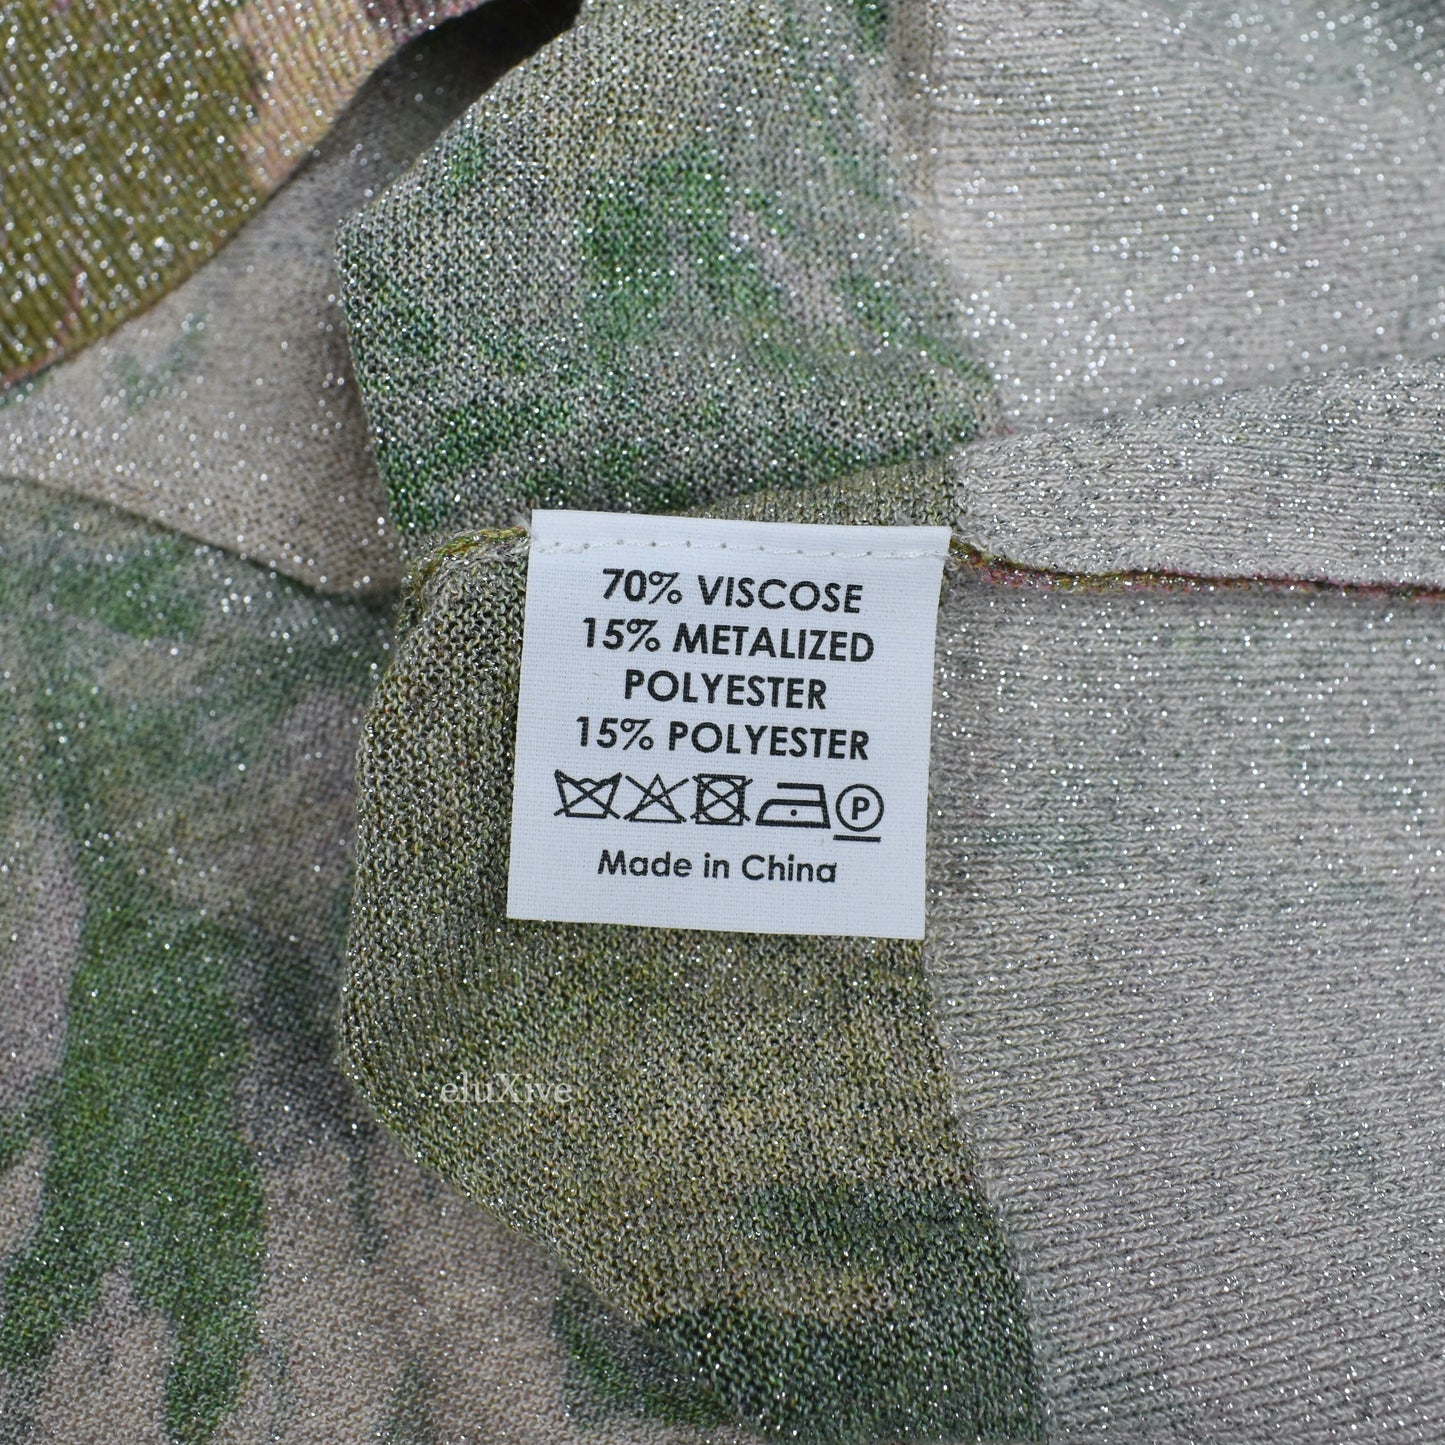 Dries Van Noten - Metallic Woven Viscose Floral Print Sweater